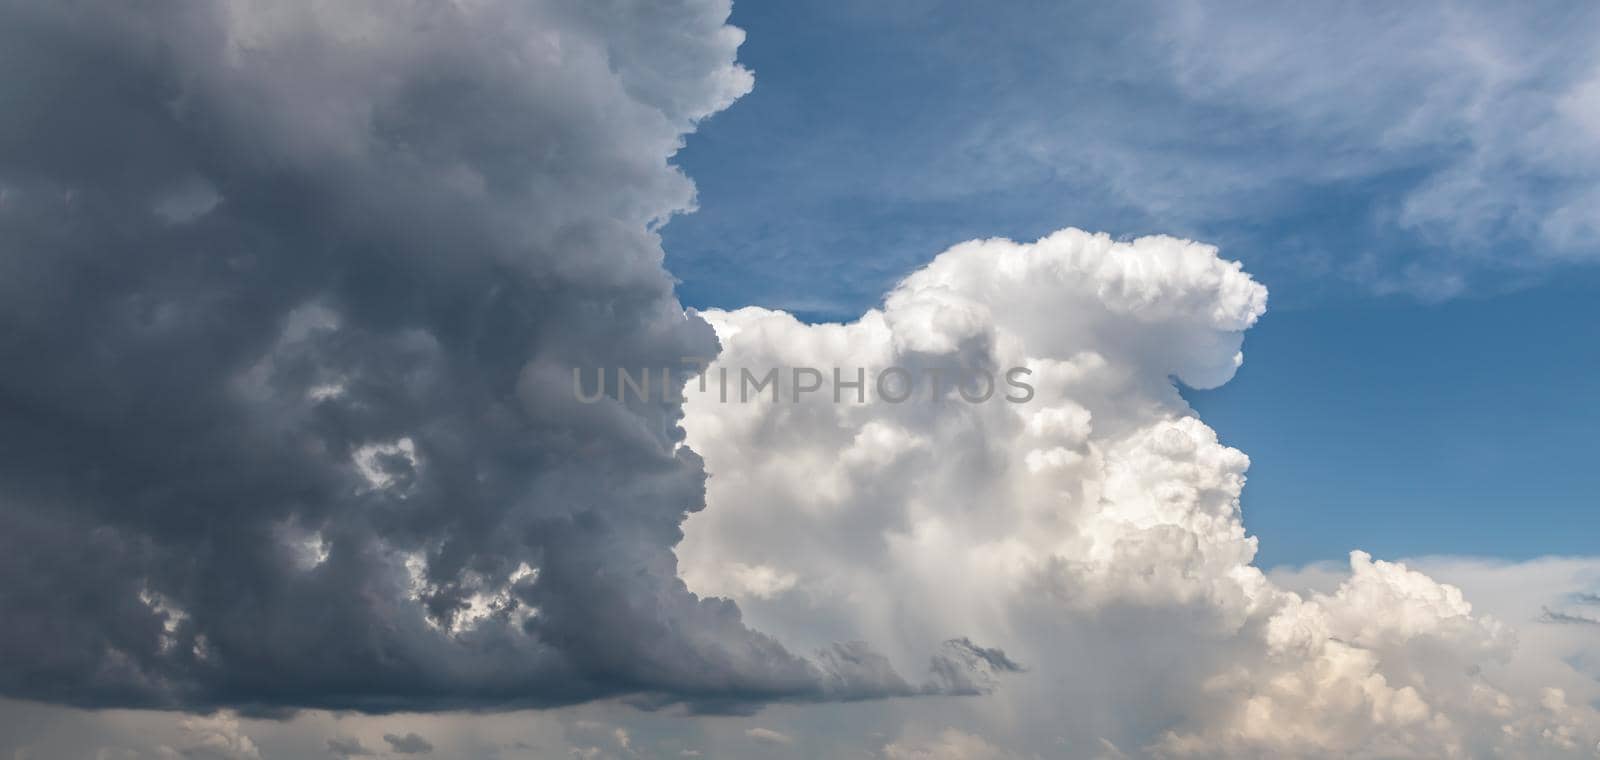 cumulonimbus cloud in the blue sky by palinchak